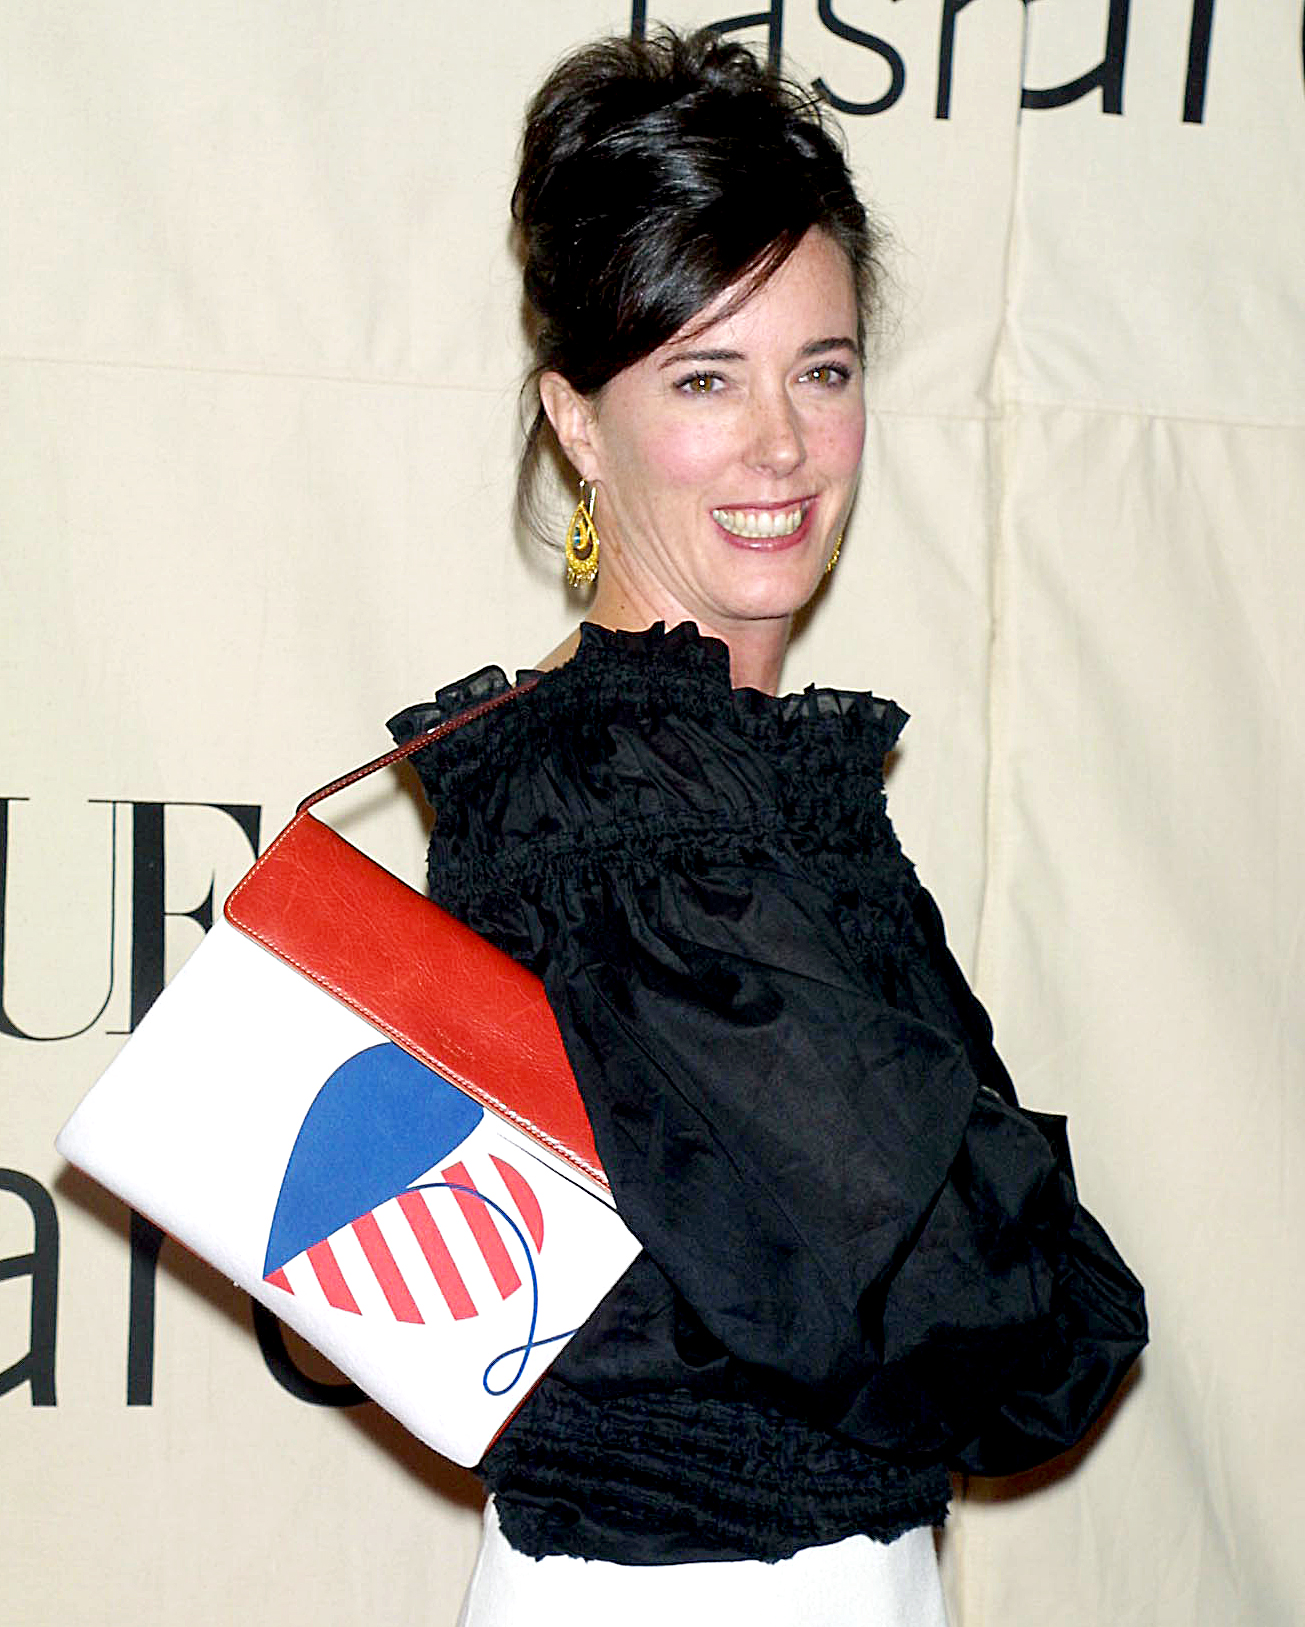 Kate Spade our fav bag designer  Bags Purses Purses and handbags